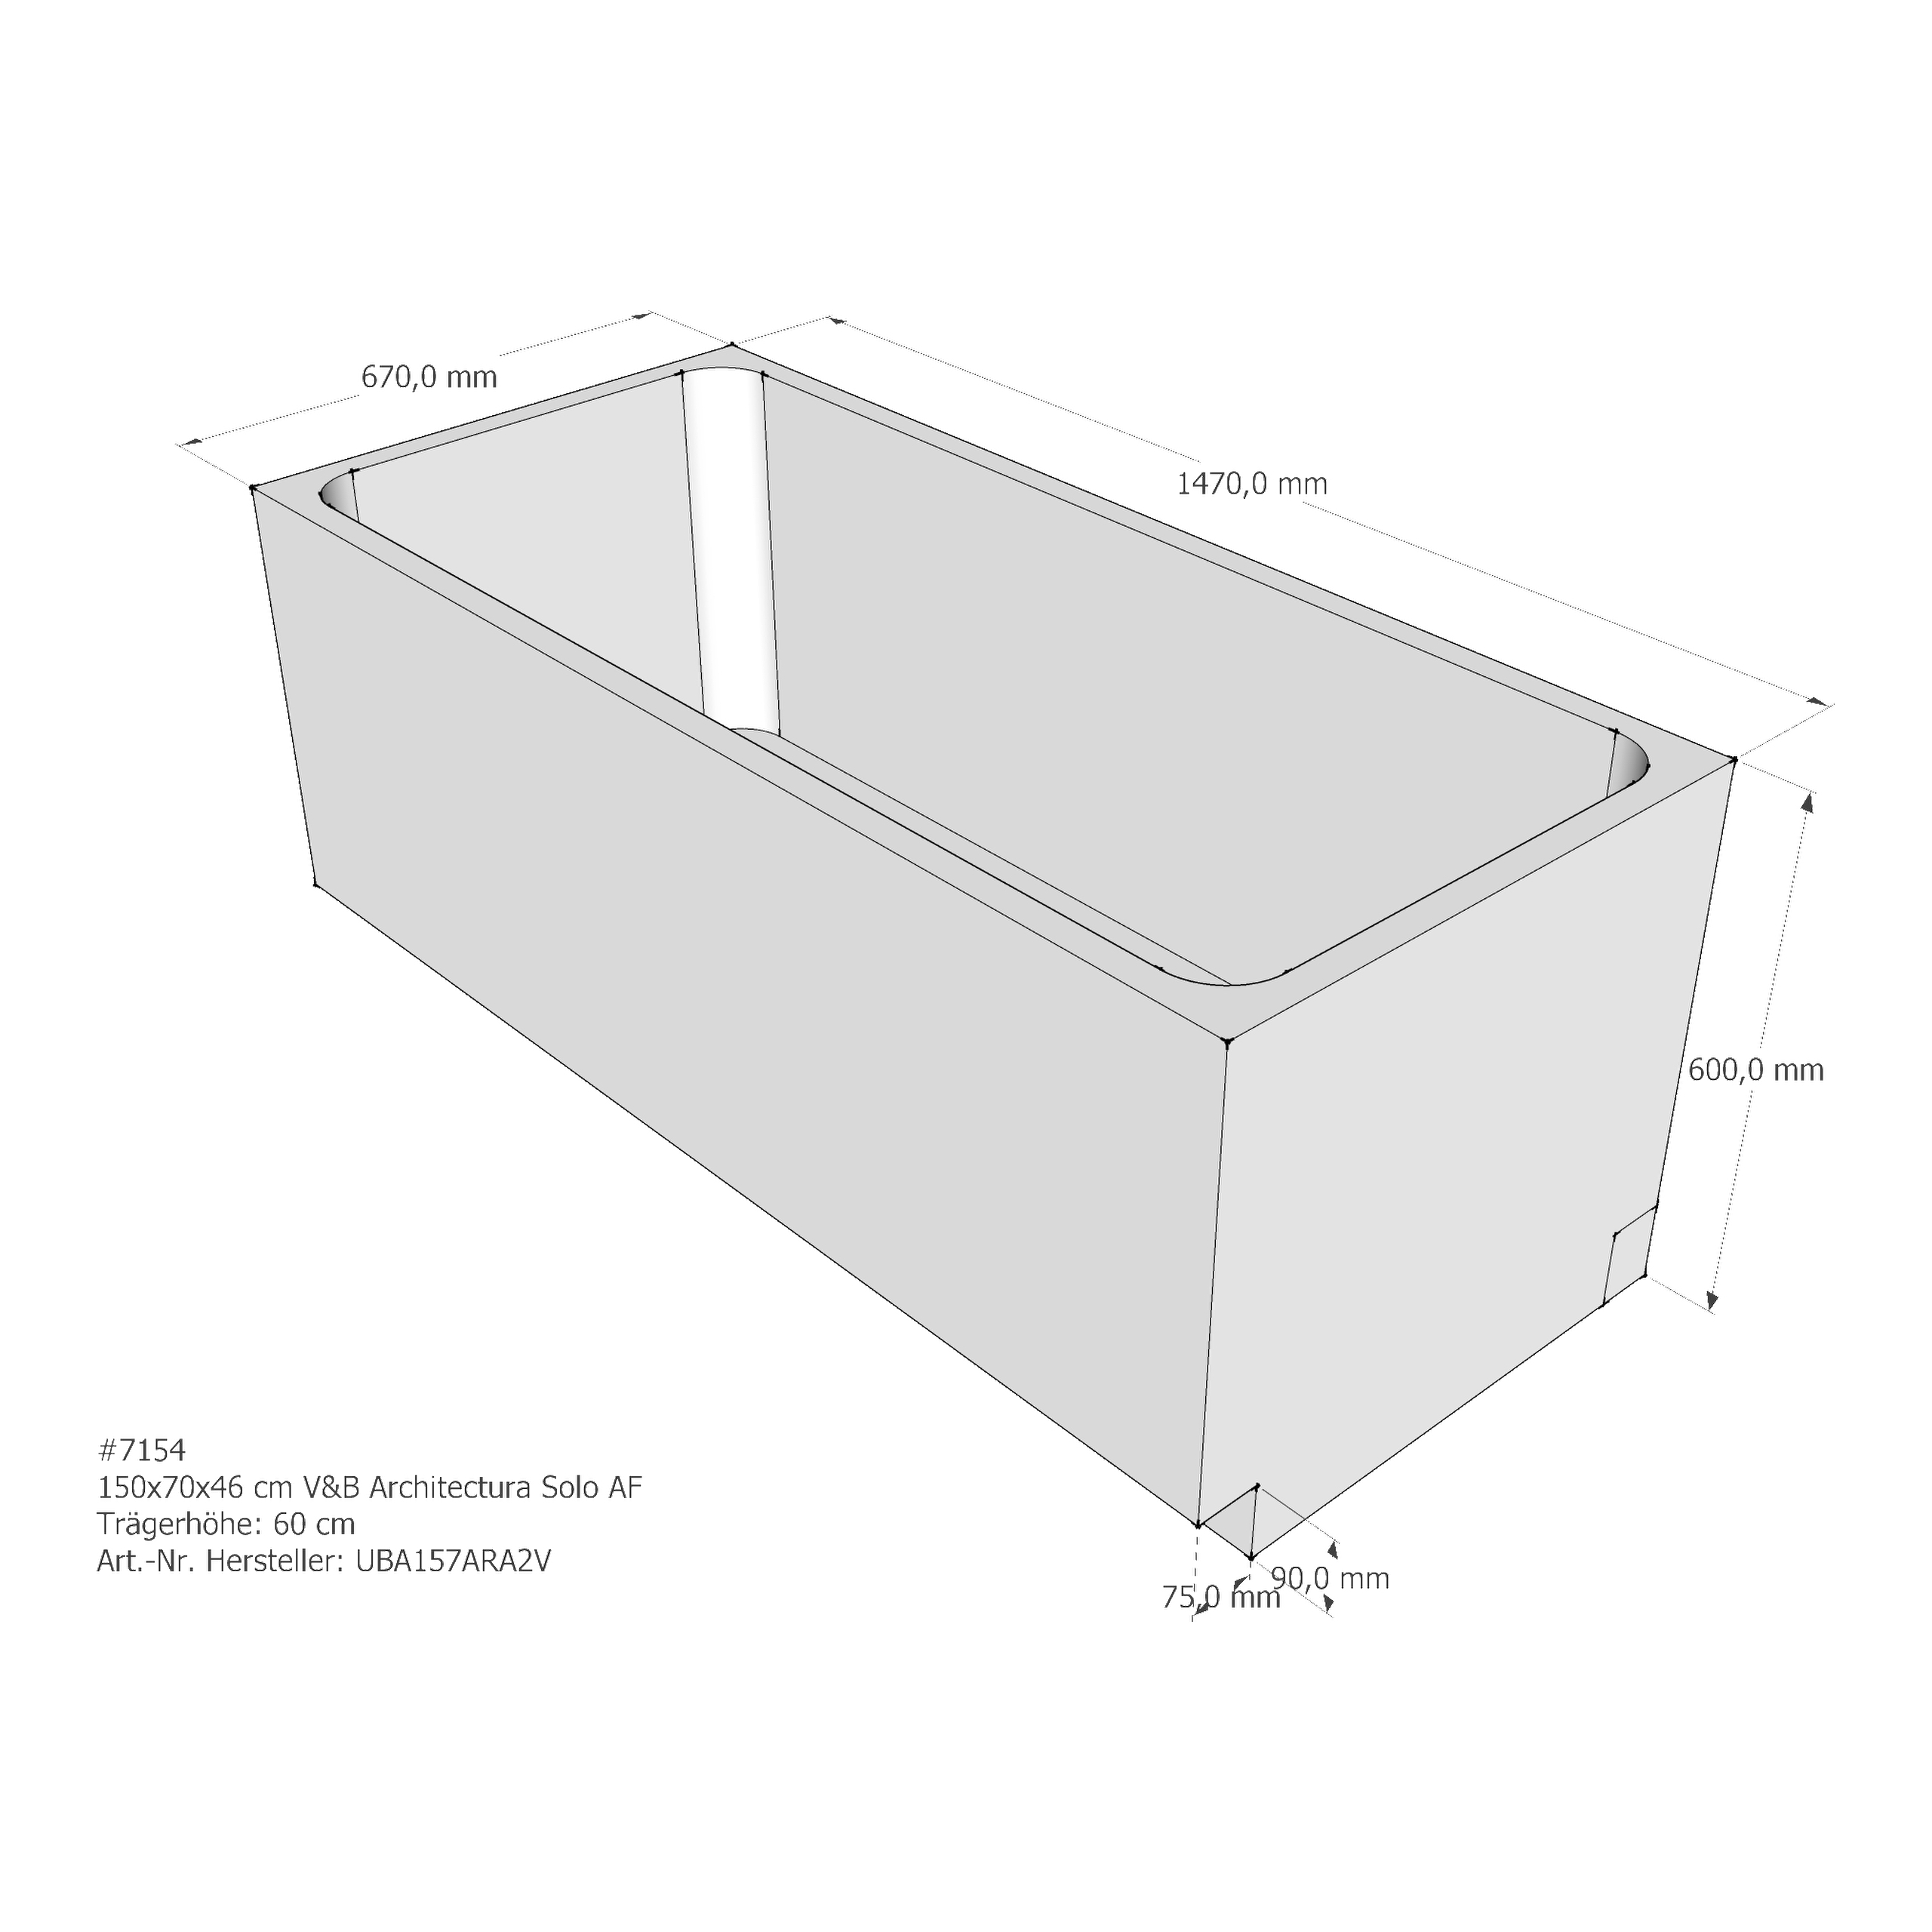 Badewannenträger für Villeroy & Boch Architectura (Omnia) 150 × 70 × 46 cm